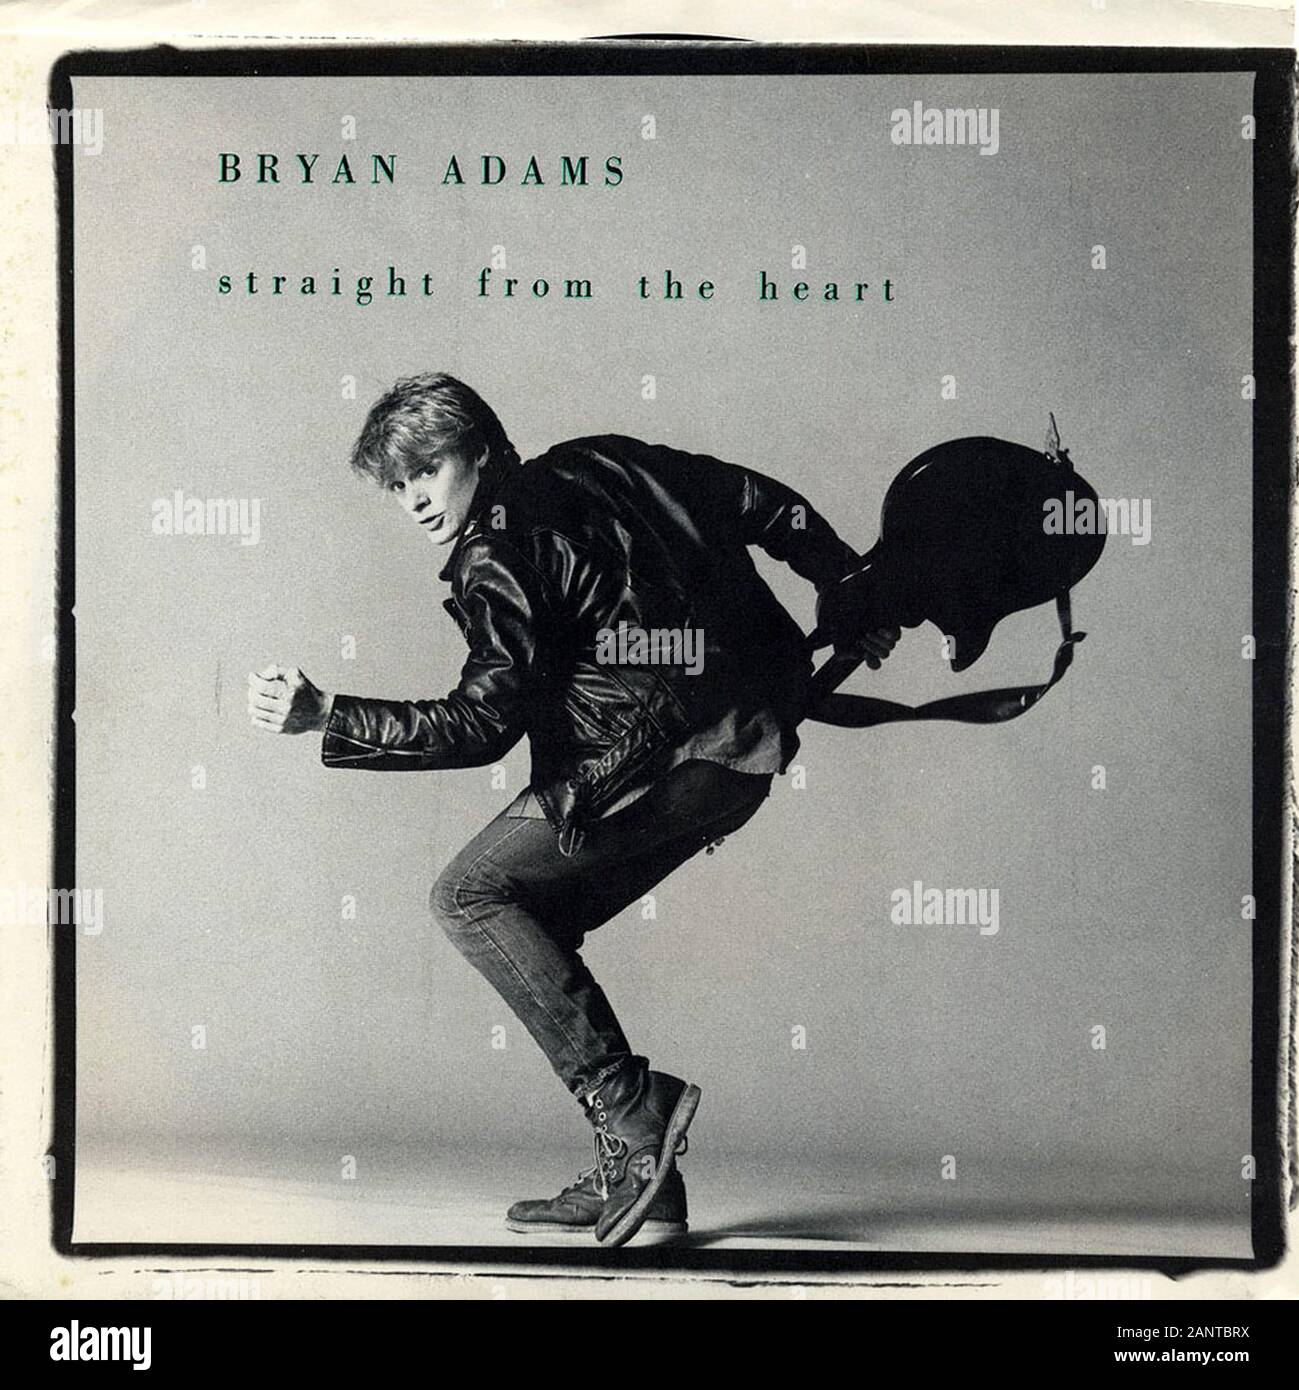 BRYAN ADAMS(サイン入り,新品LP,アナログ,ブライアン・アダムス